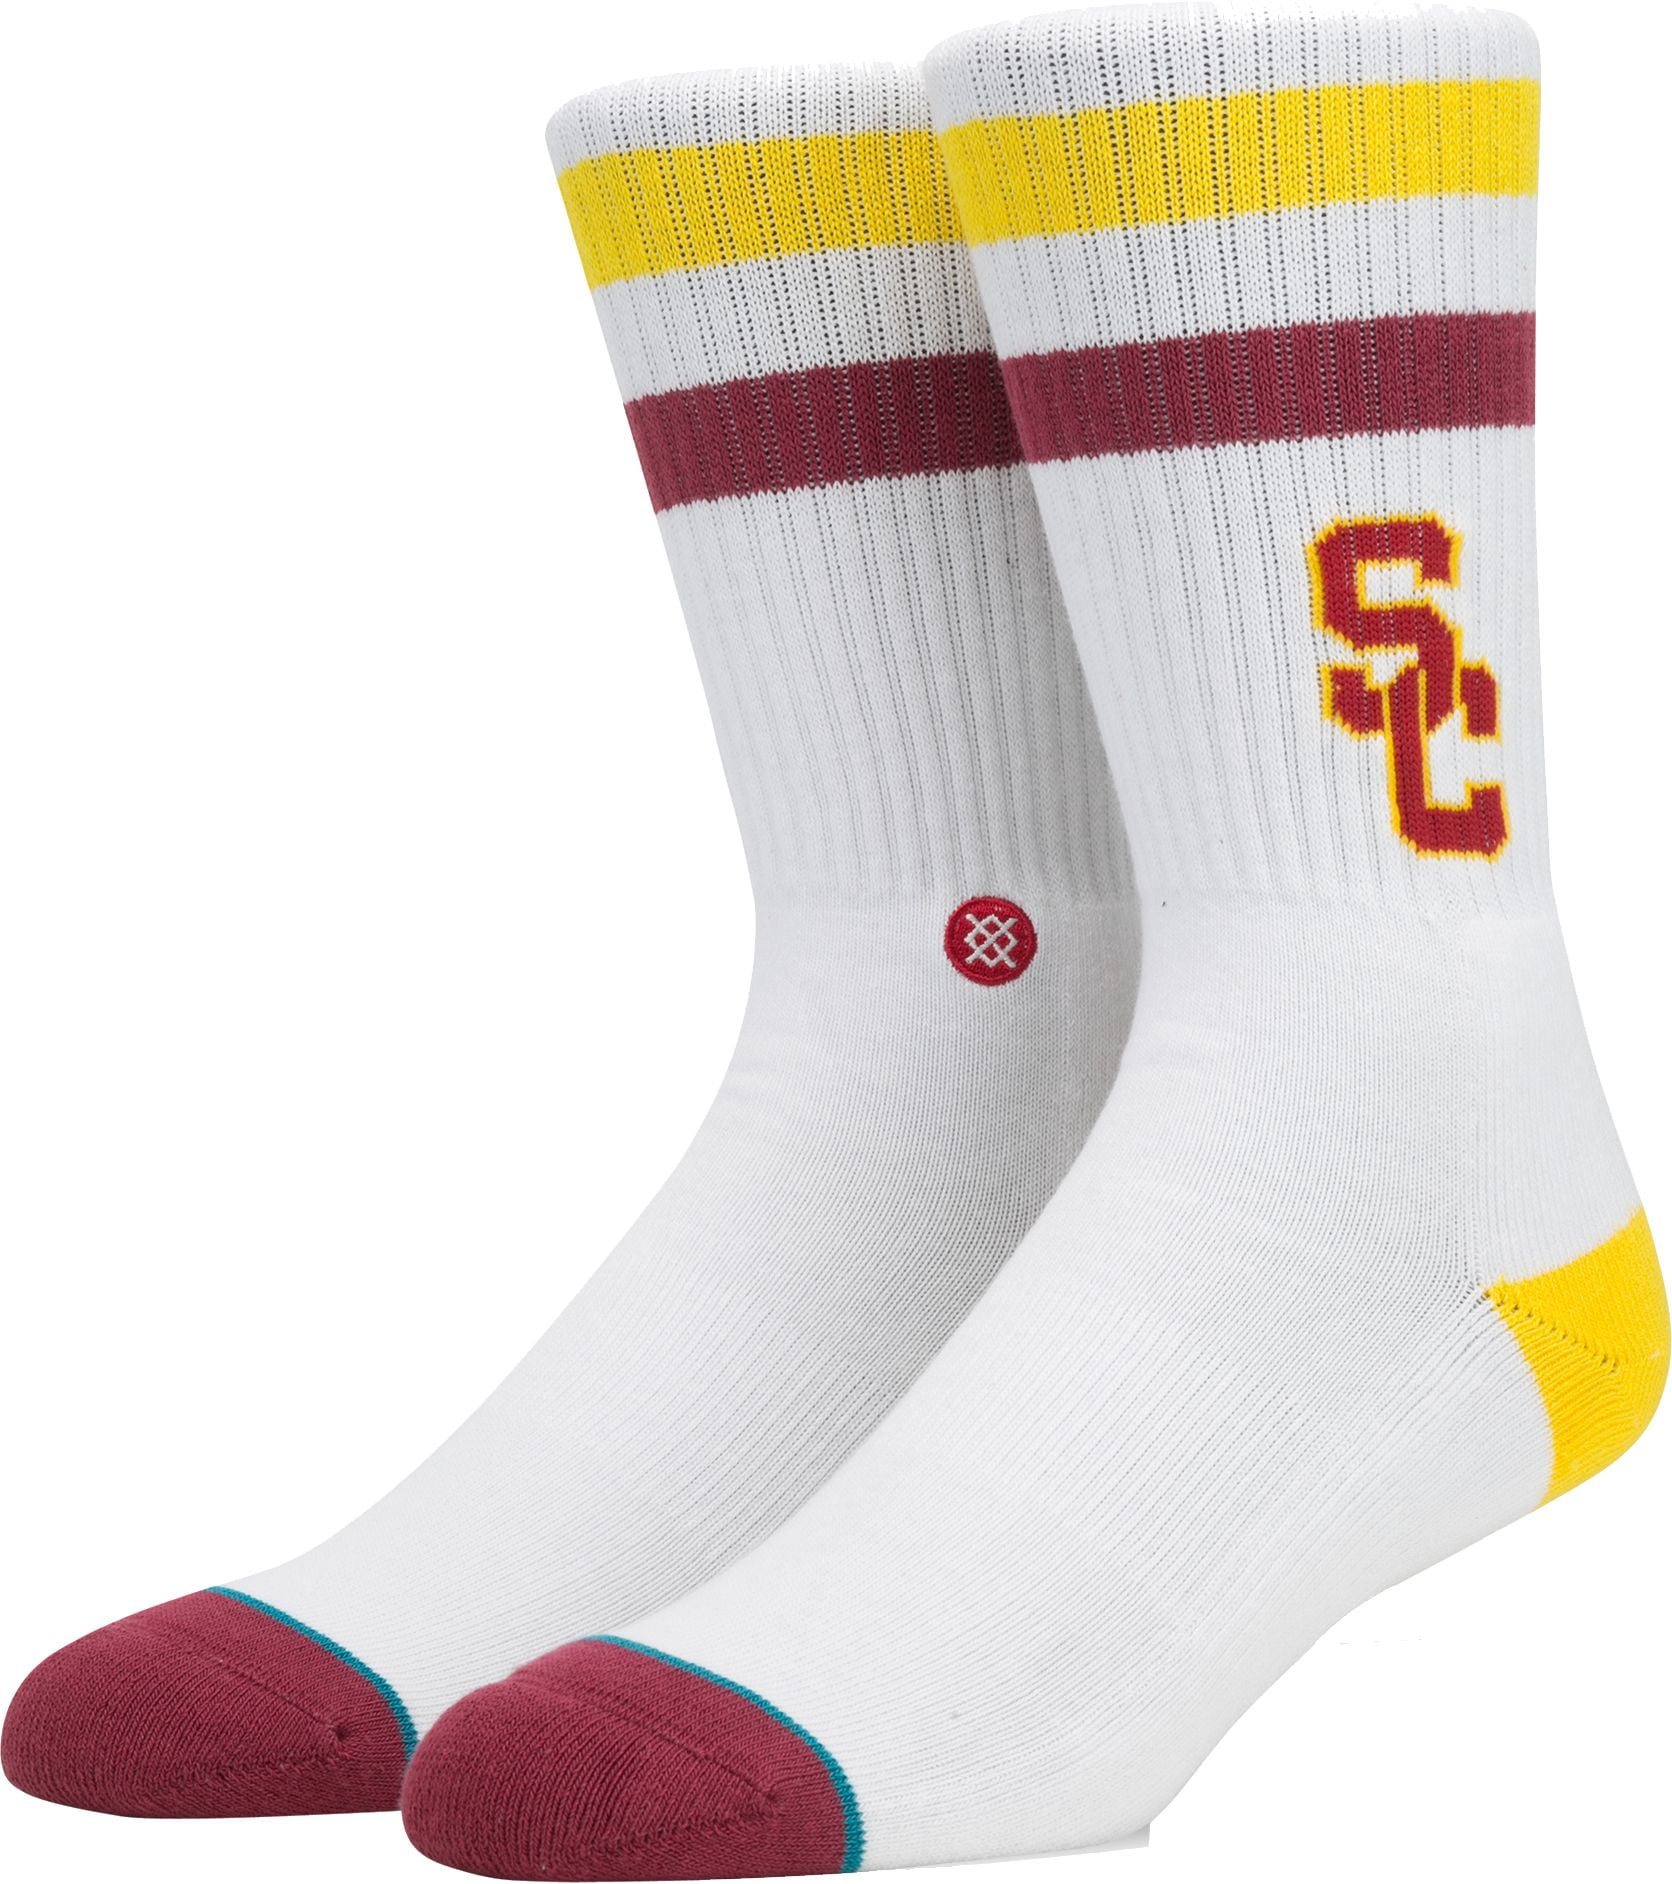 Stance Men's USC Trojans Striped Socks - Walmart.com - Walmart.com